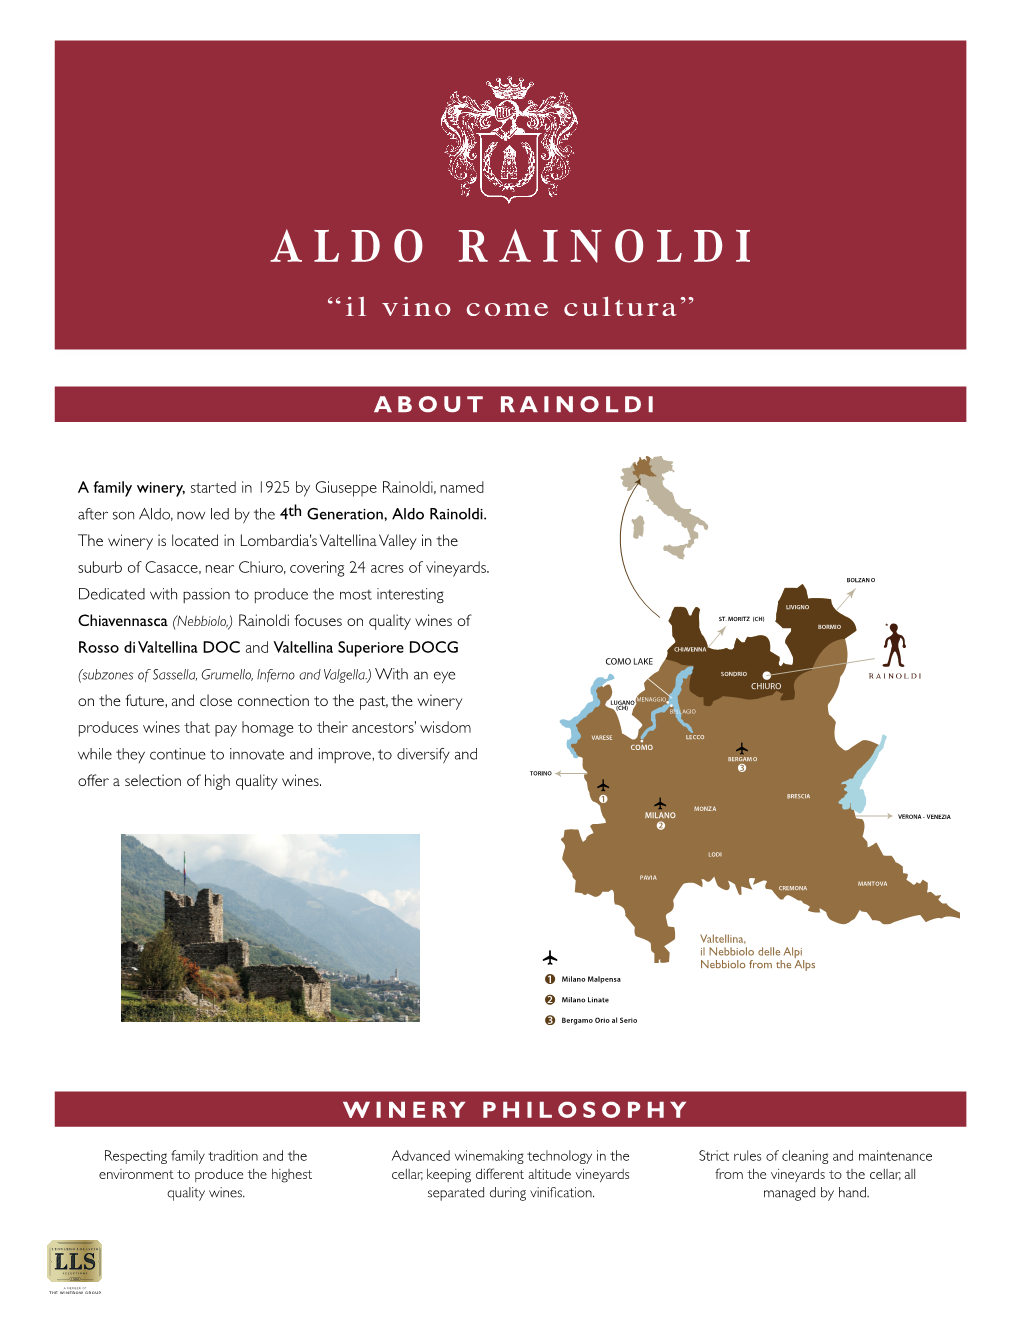 About Rainoldi Winery Philosophy